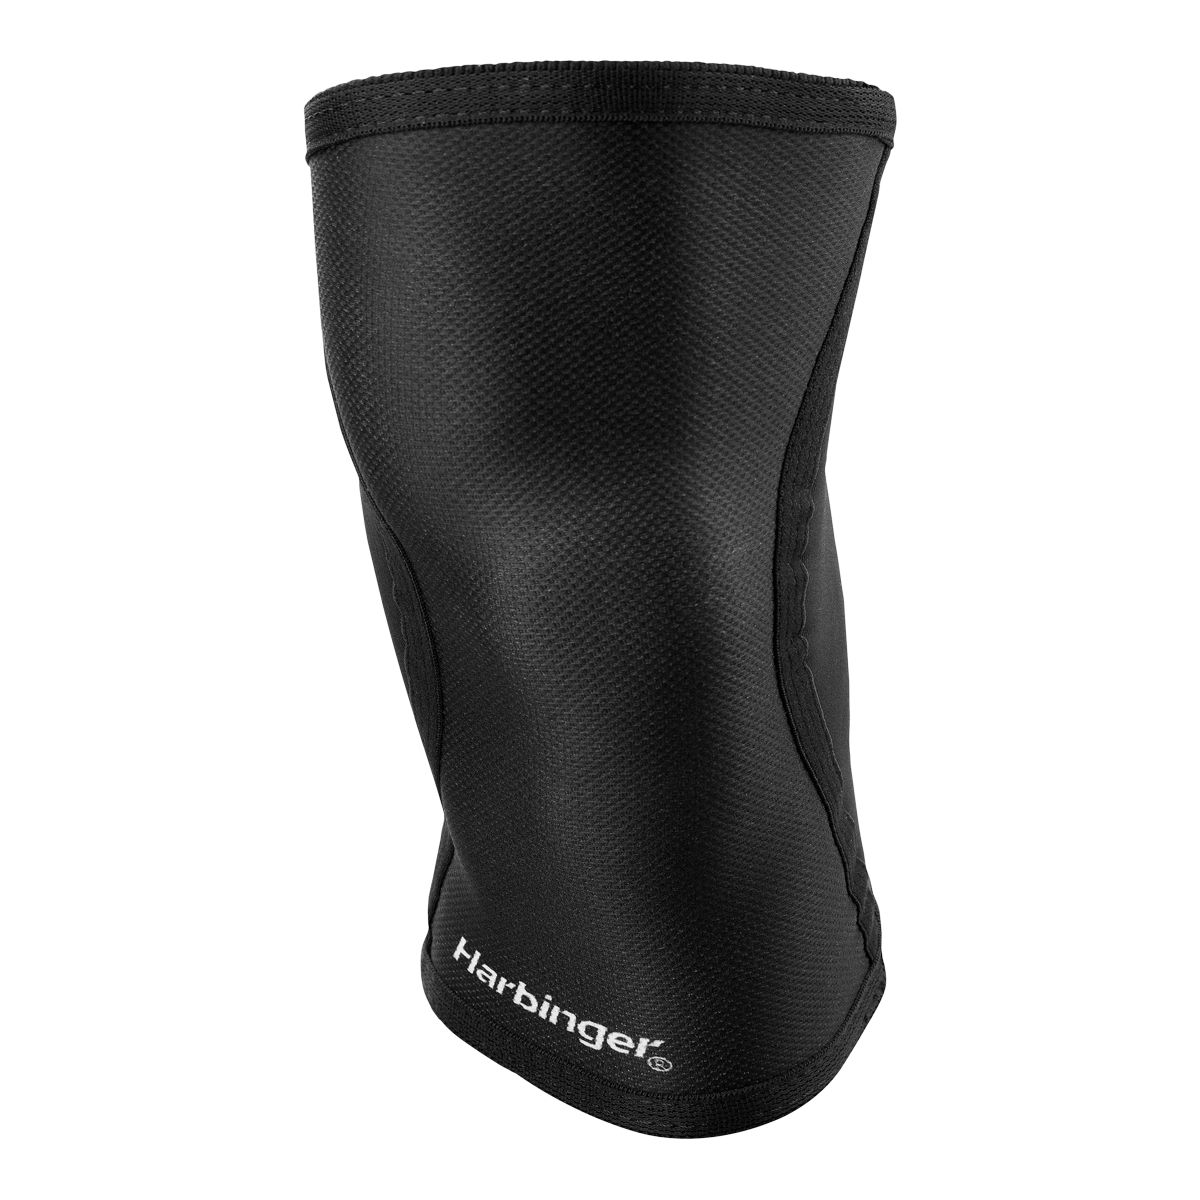 Harbinger 5mm Neoprene Knee Sleeves